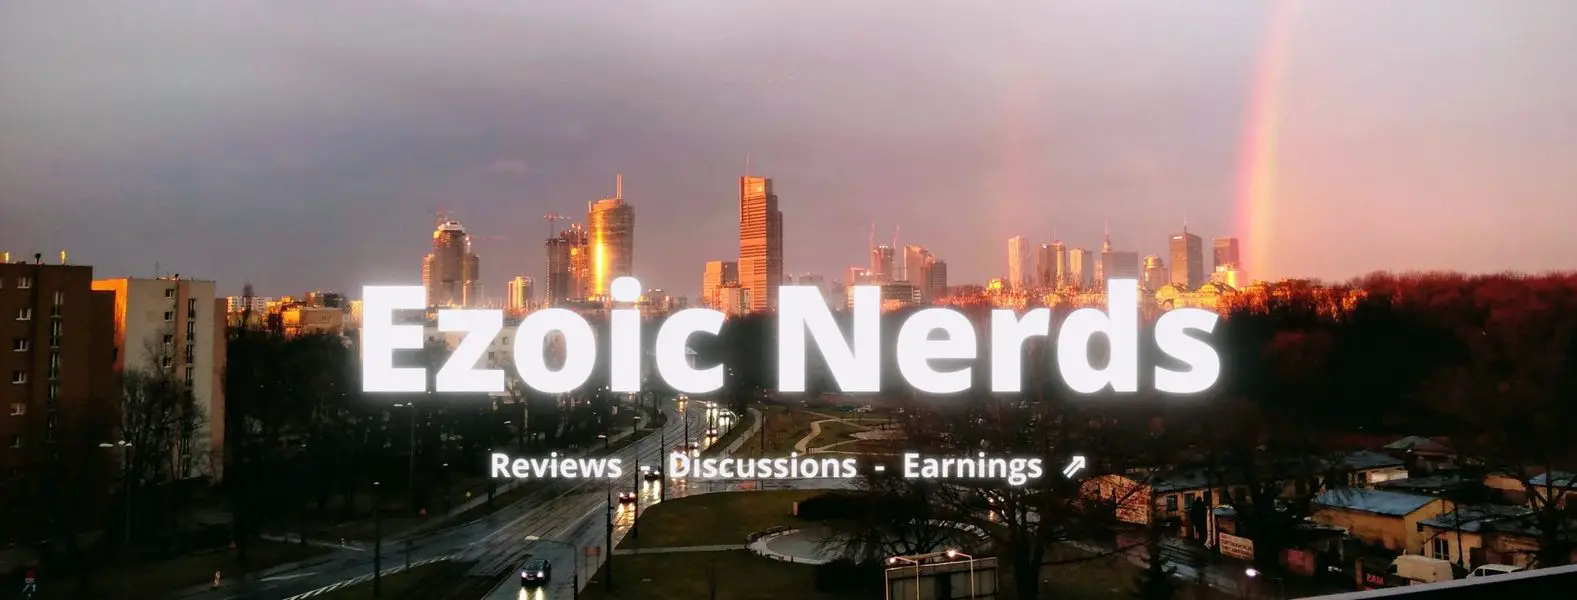 Ezoic nerds - பேஸ்புக் கலந்துரையாடல் குழு